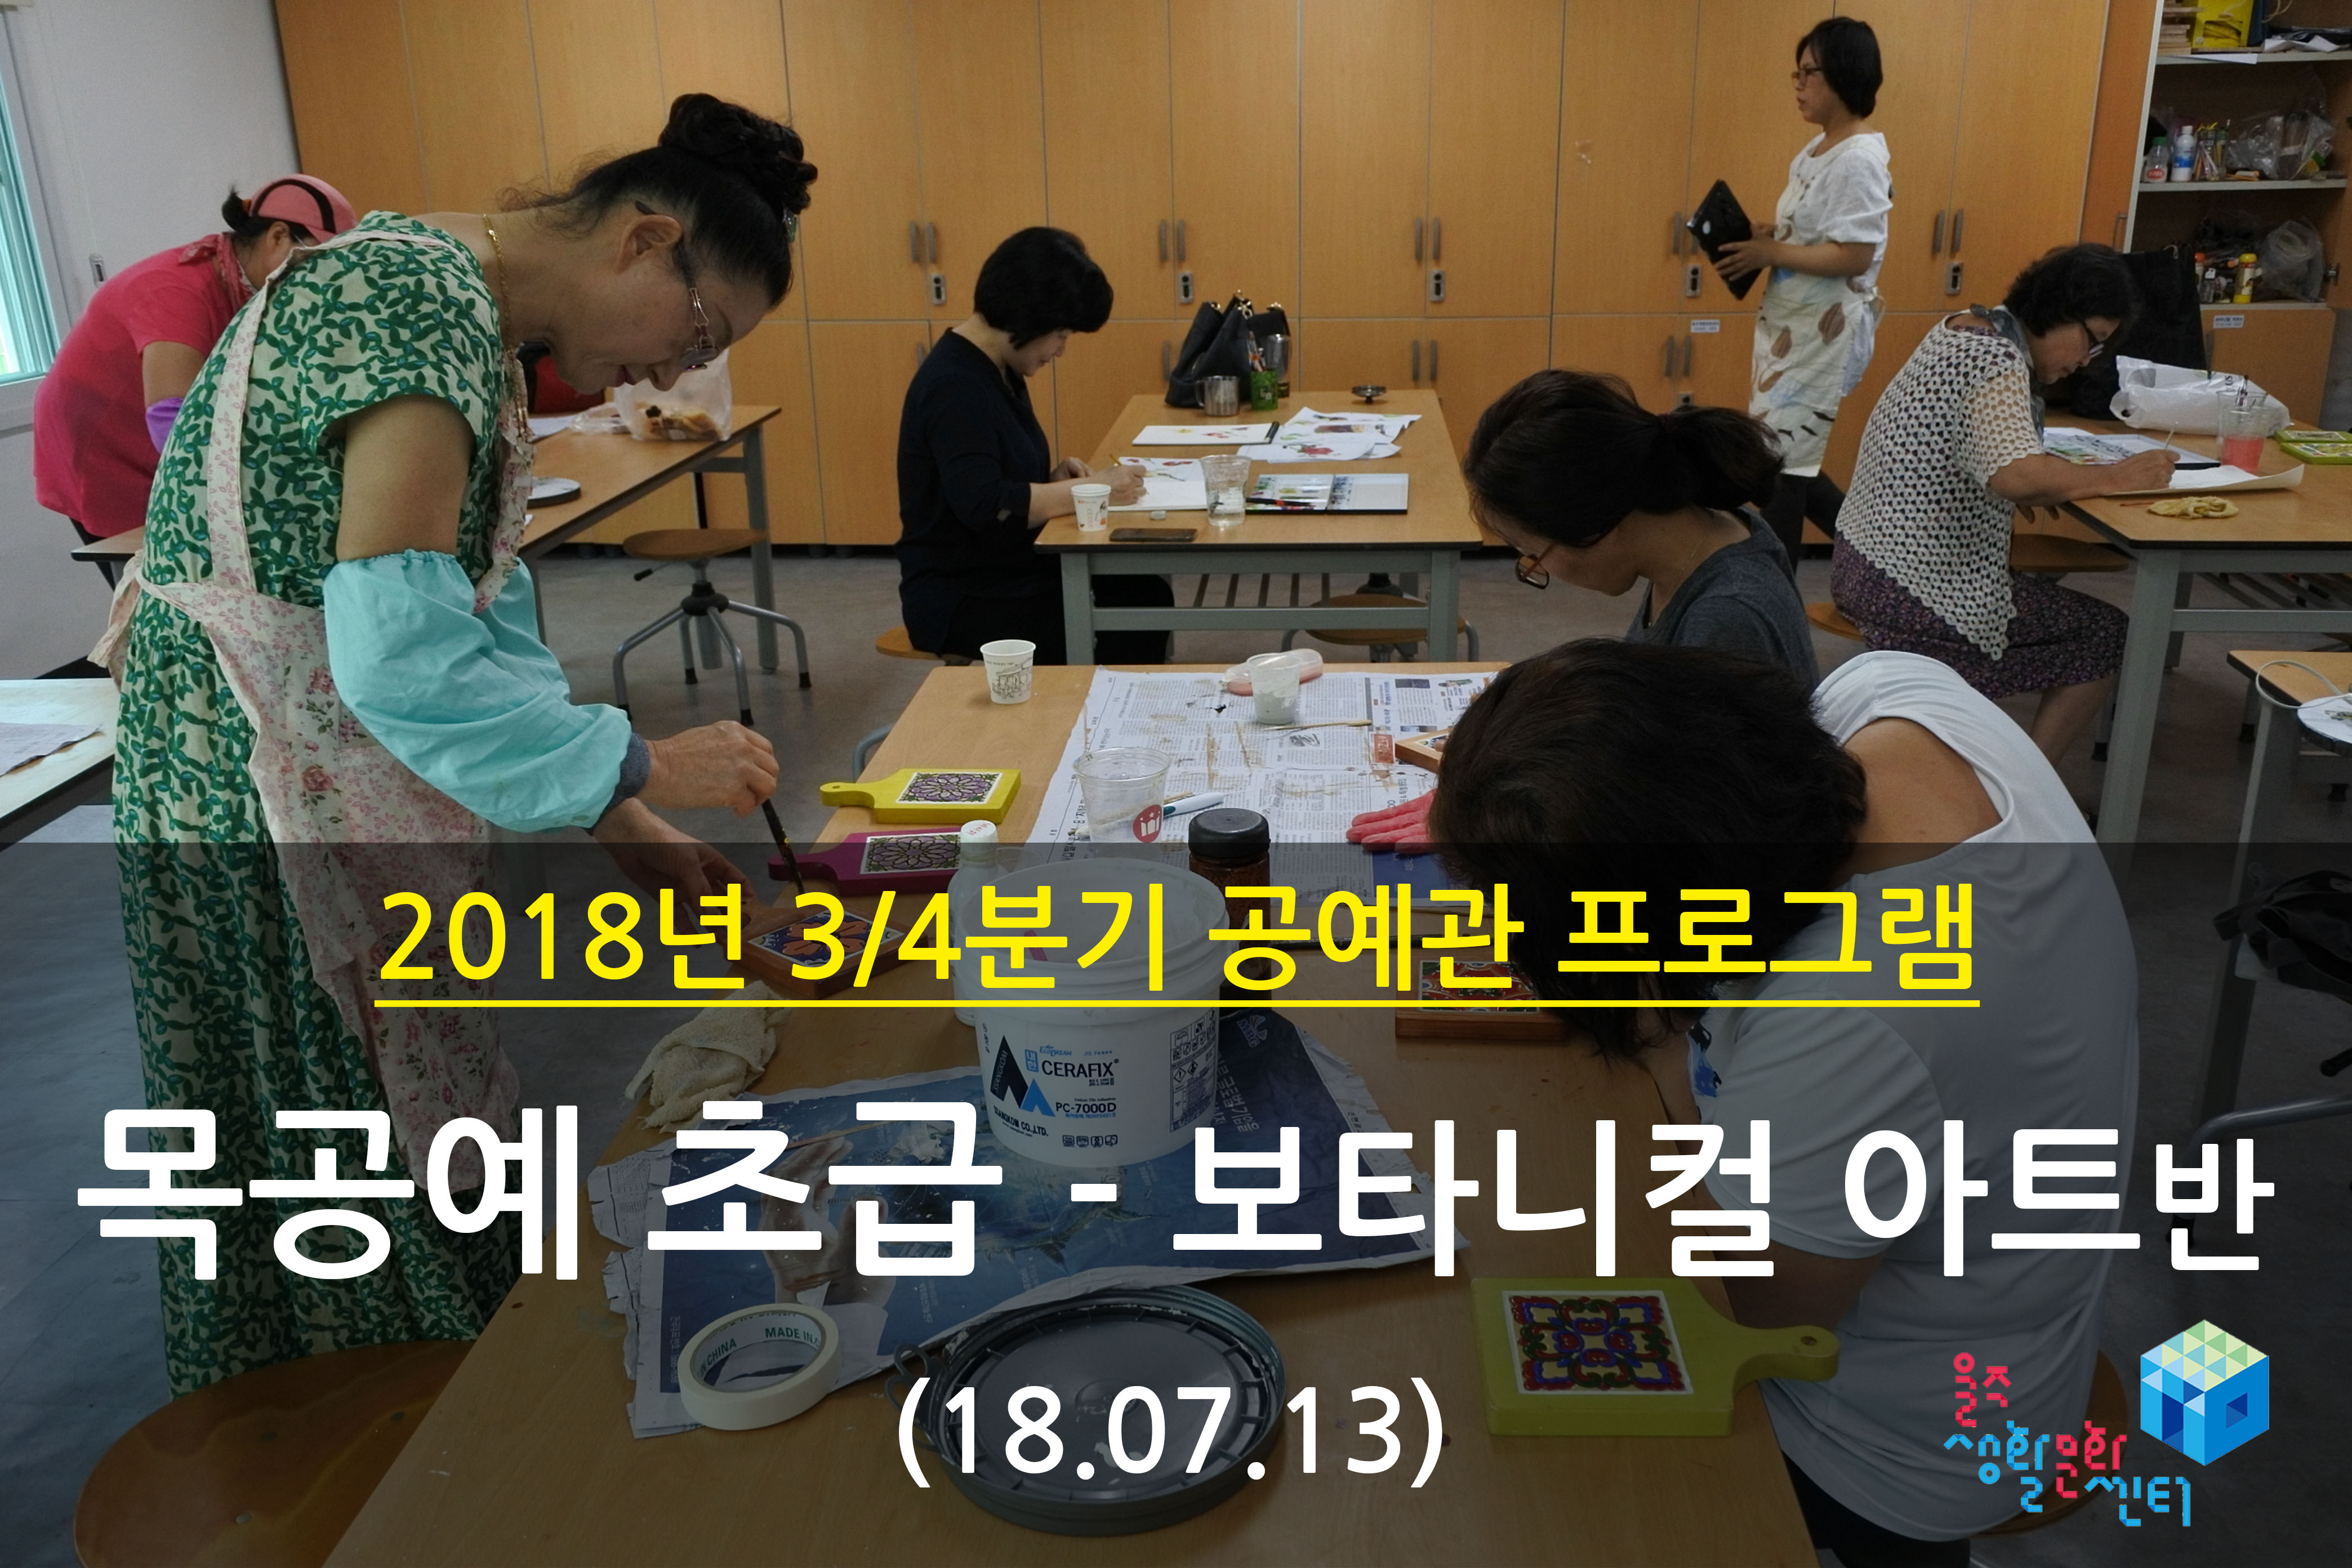 2018.07.13 _ 목공예 초급 - 보타니컬 아트반 _ 3/4분기 2주차 수업